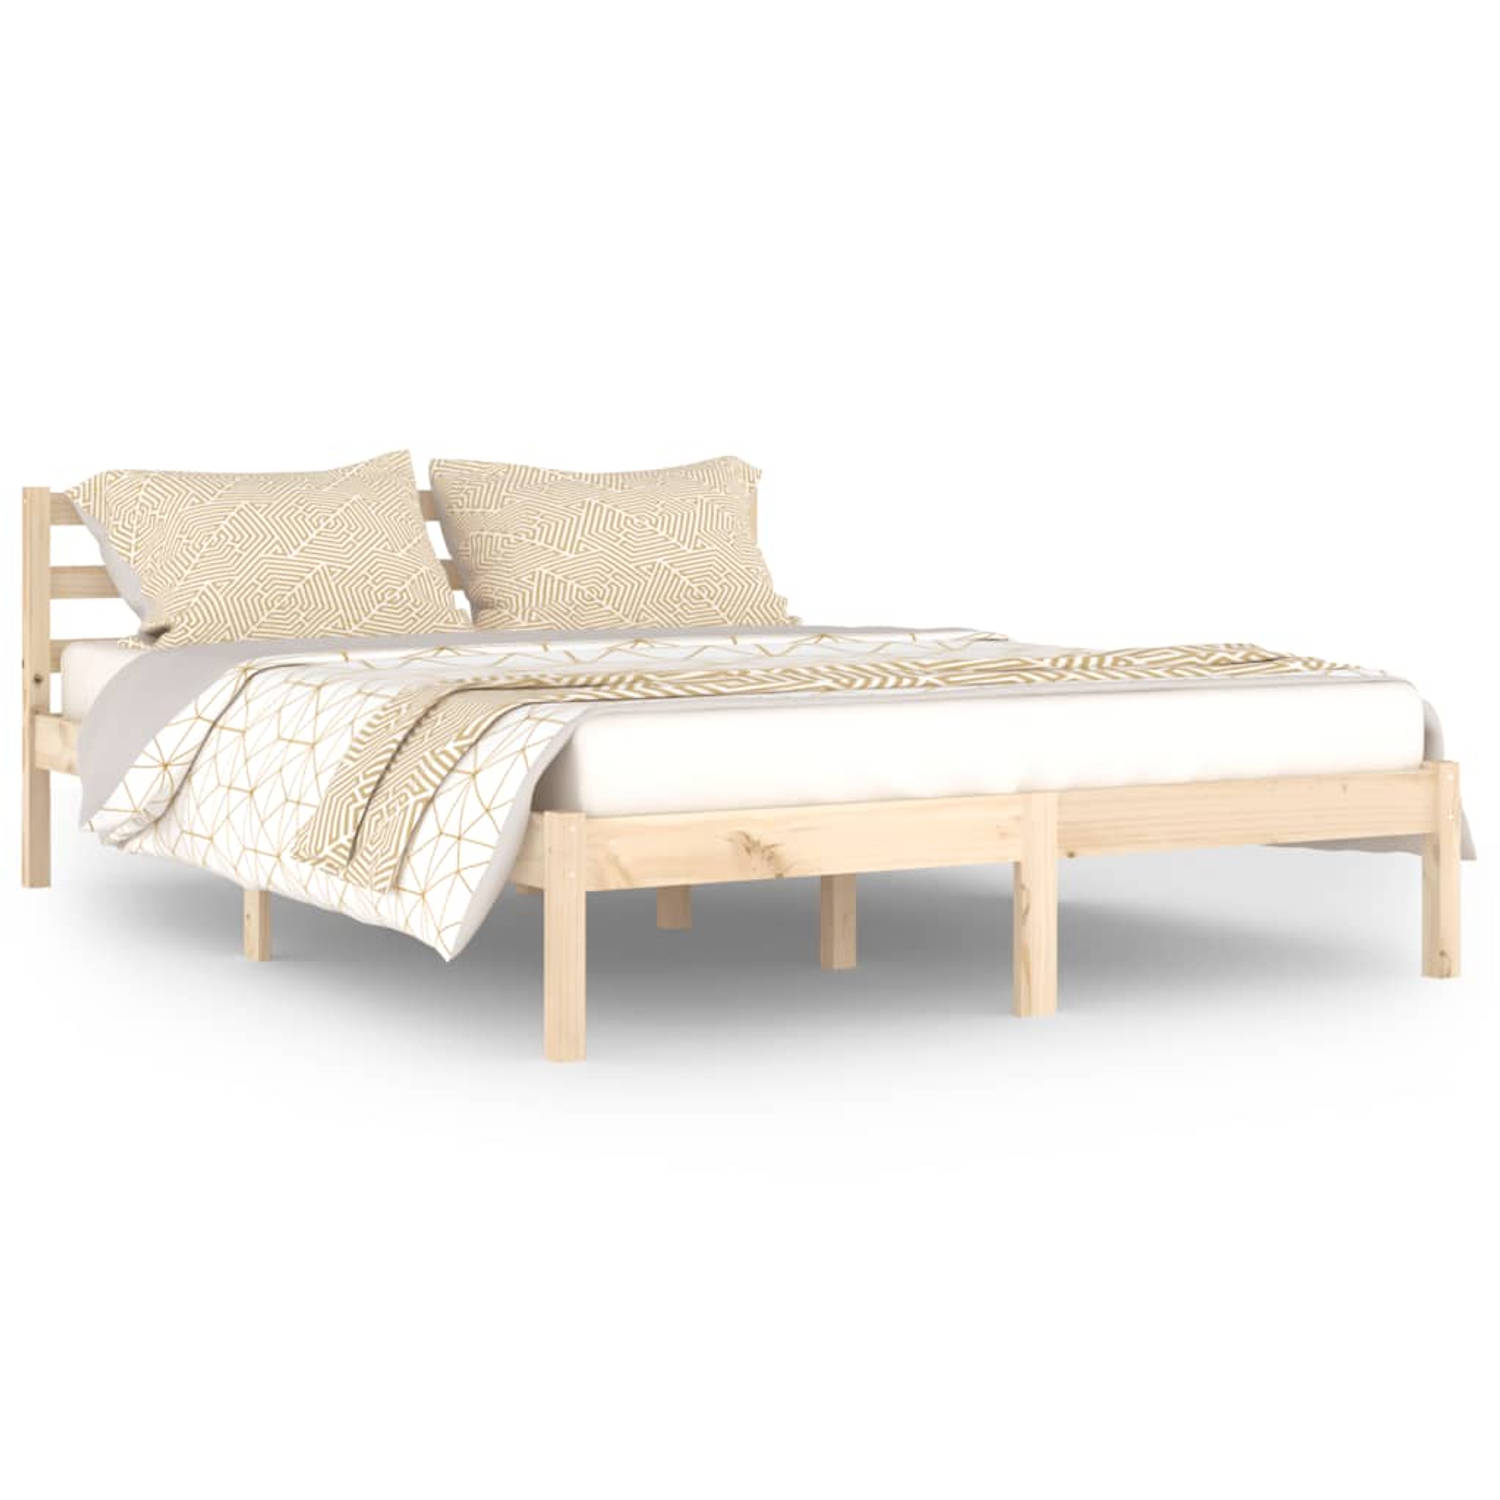 The Living Store Bedframe massief grenenhout 140x200 cm - Bedframe - Bedframes - Bed - Bedbodem - Ledikant - Bed Frame - Massief Houten Bedframe - Slaapmeubel - Bedden - Bedbodems